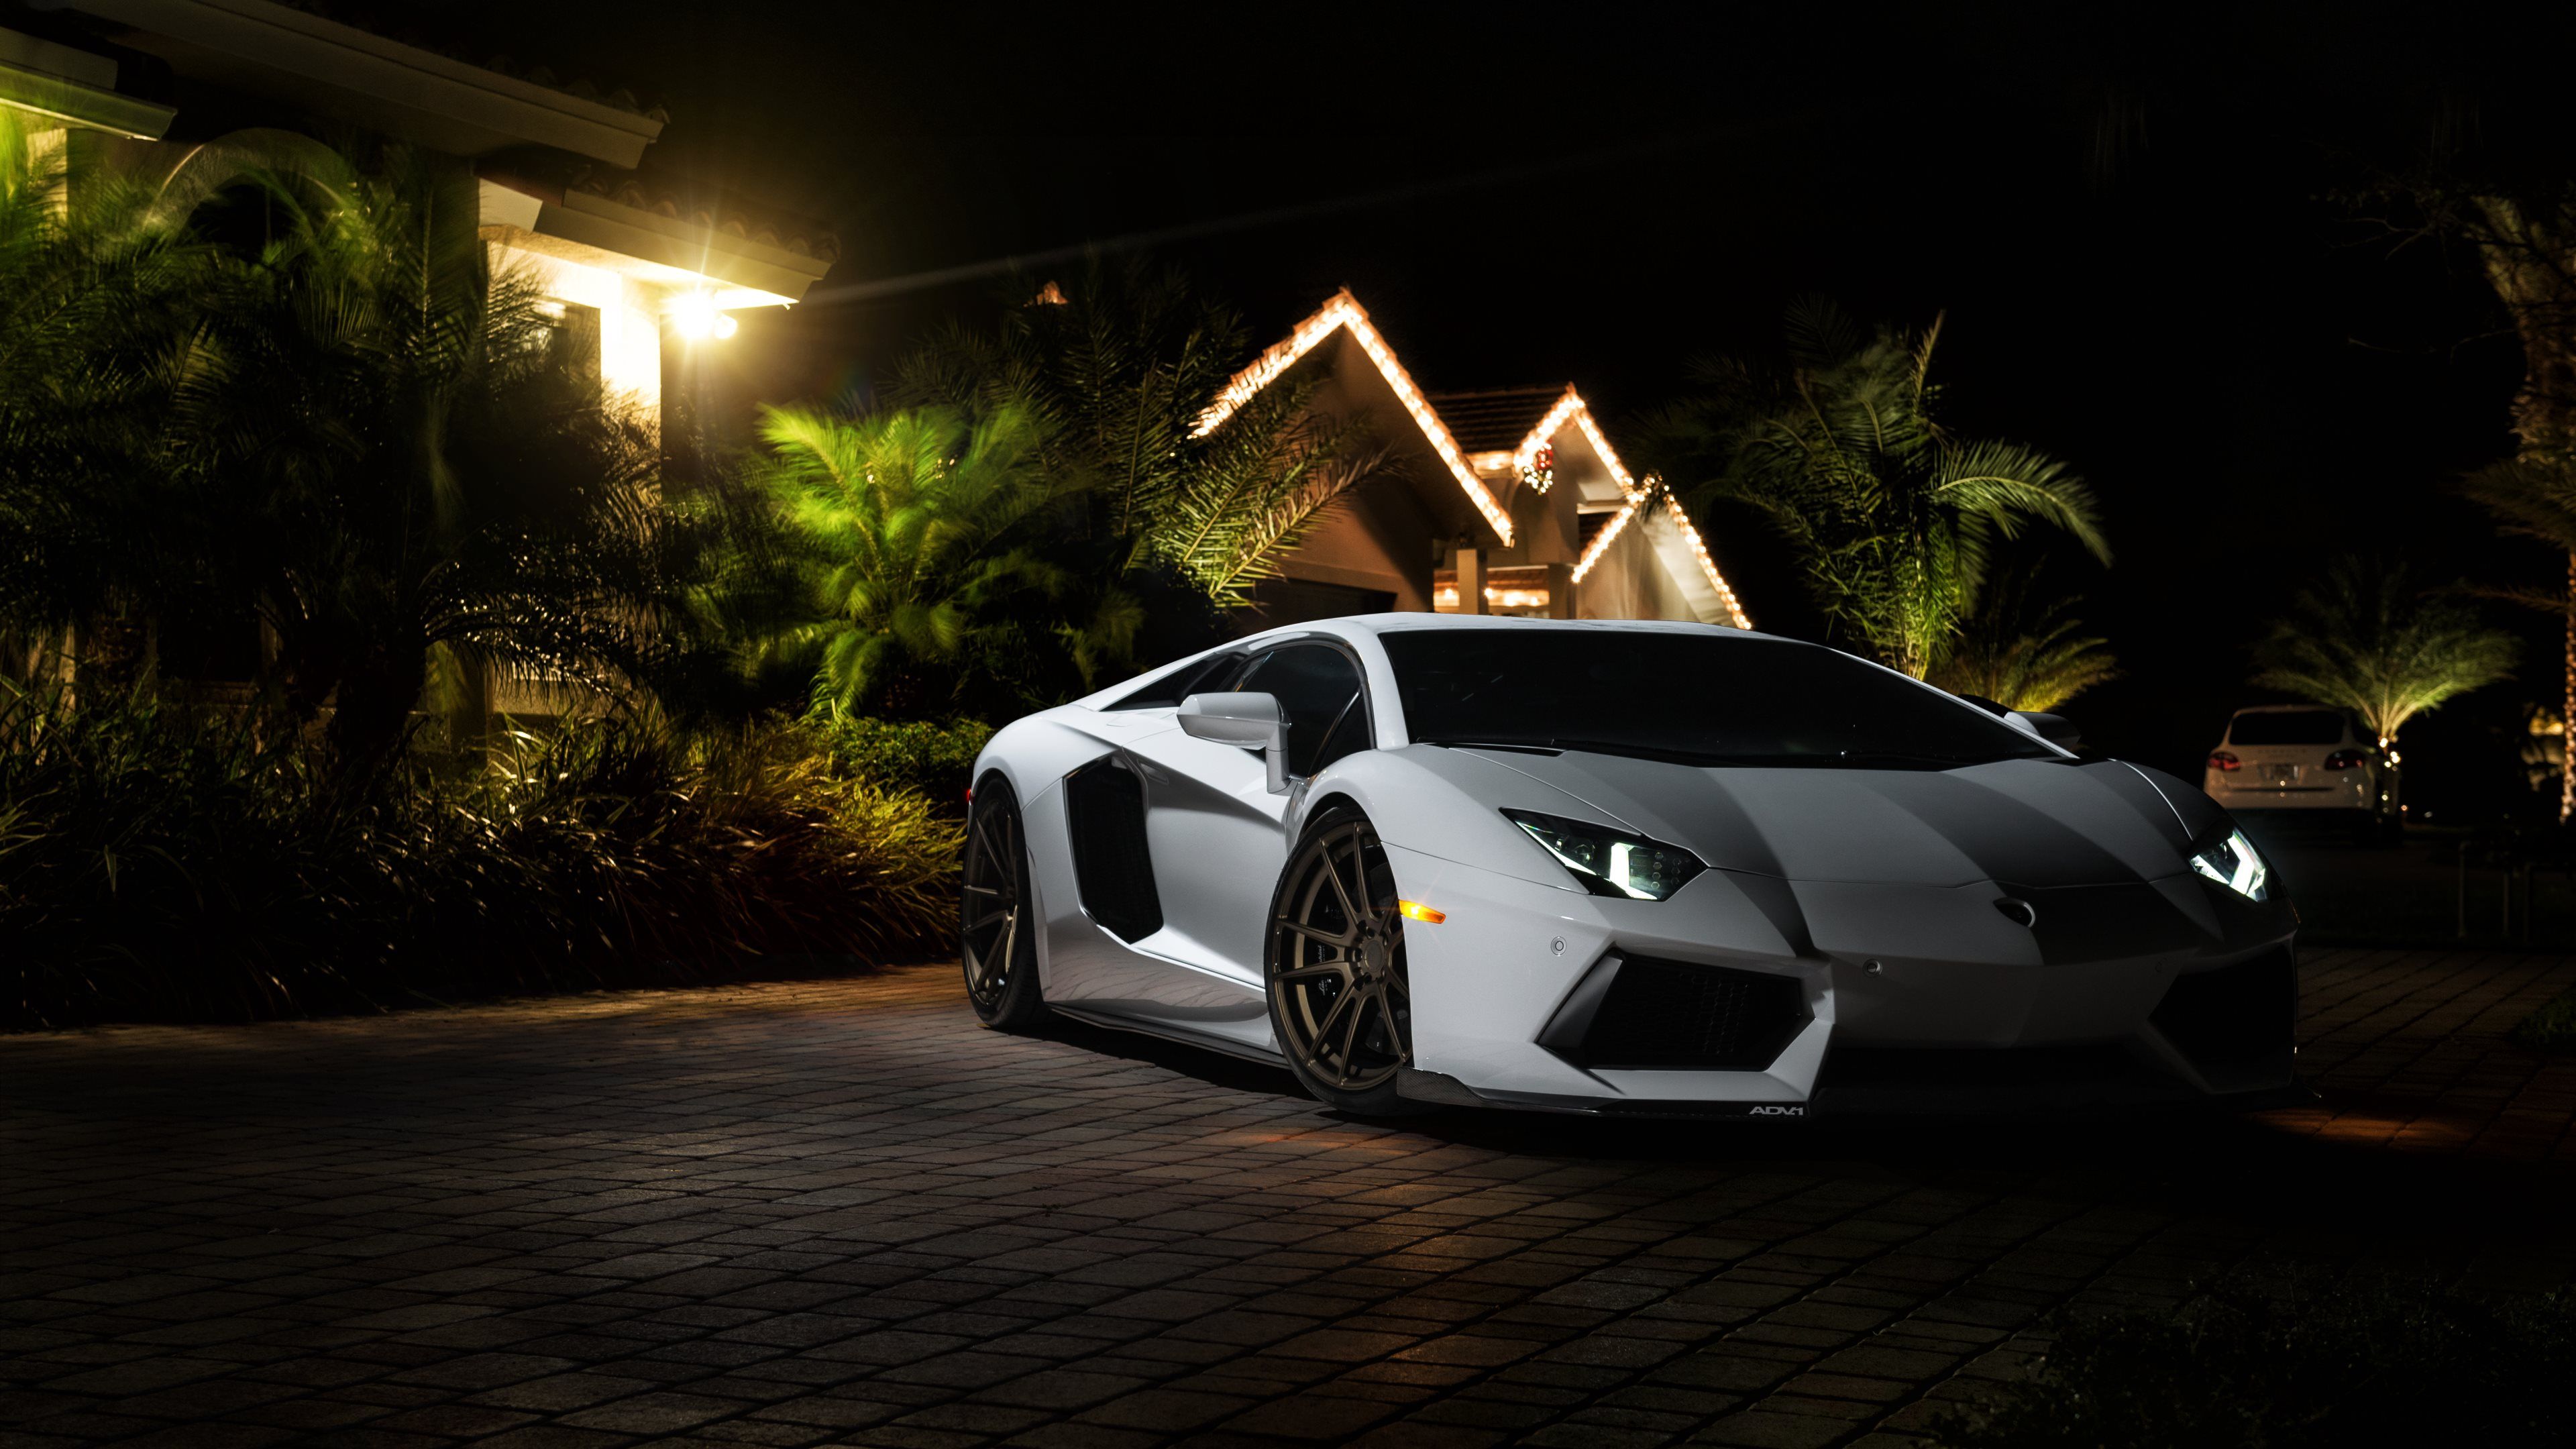 Download Full Hd P Lamborghini Wallpapers Hd Desktop Backgrounds 4k